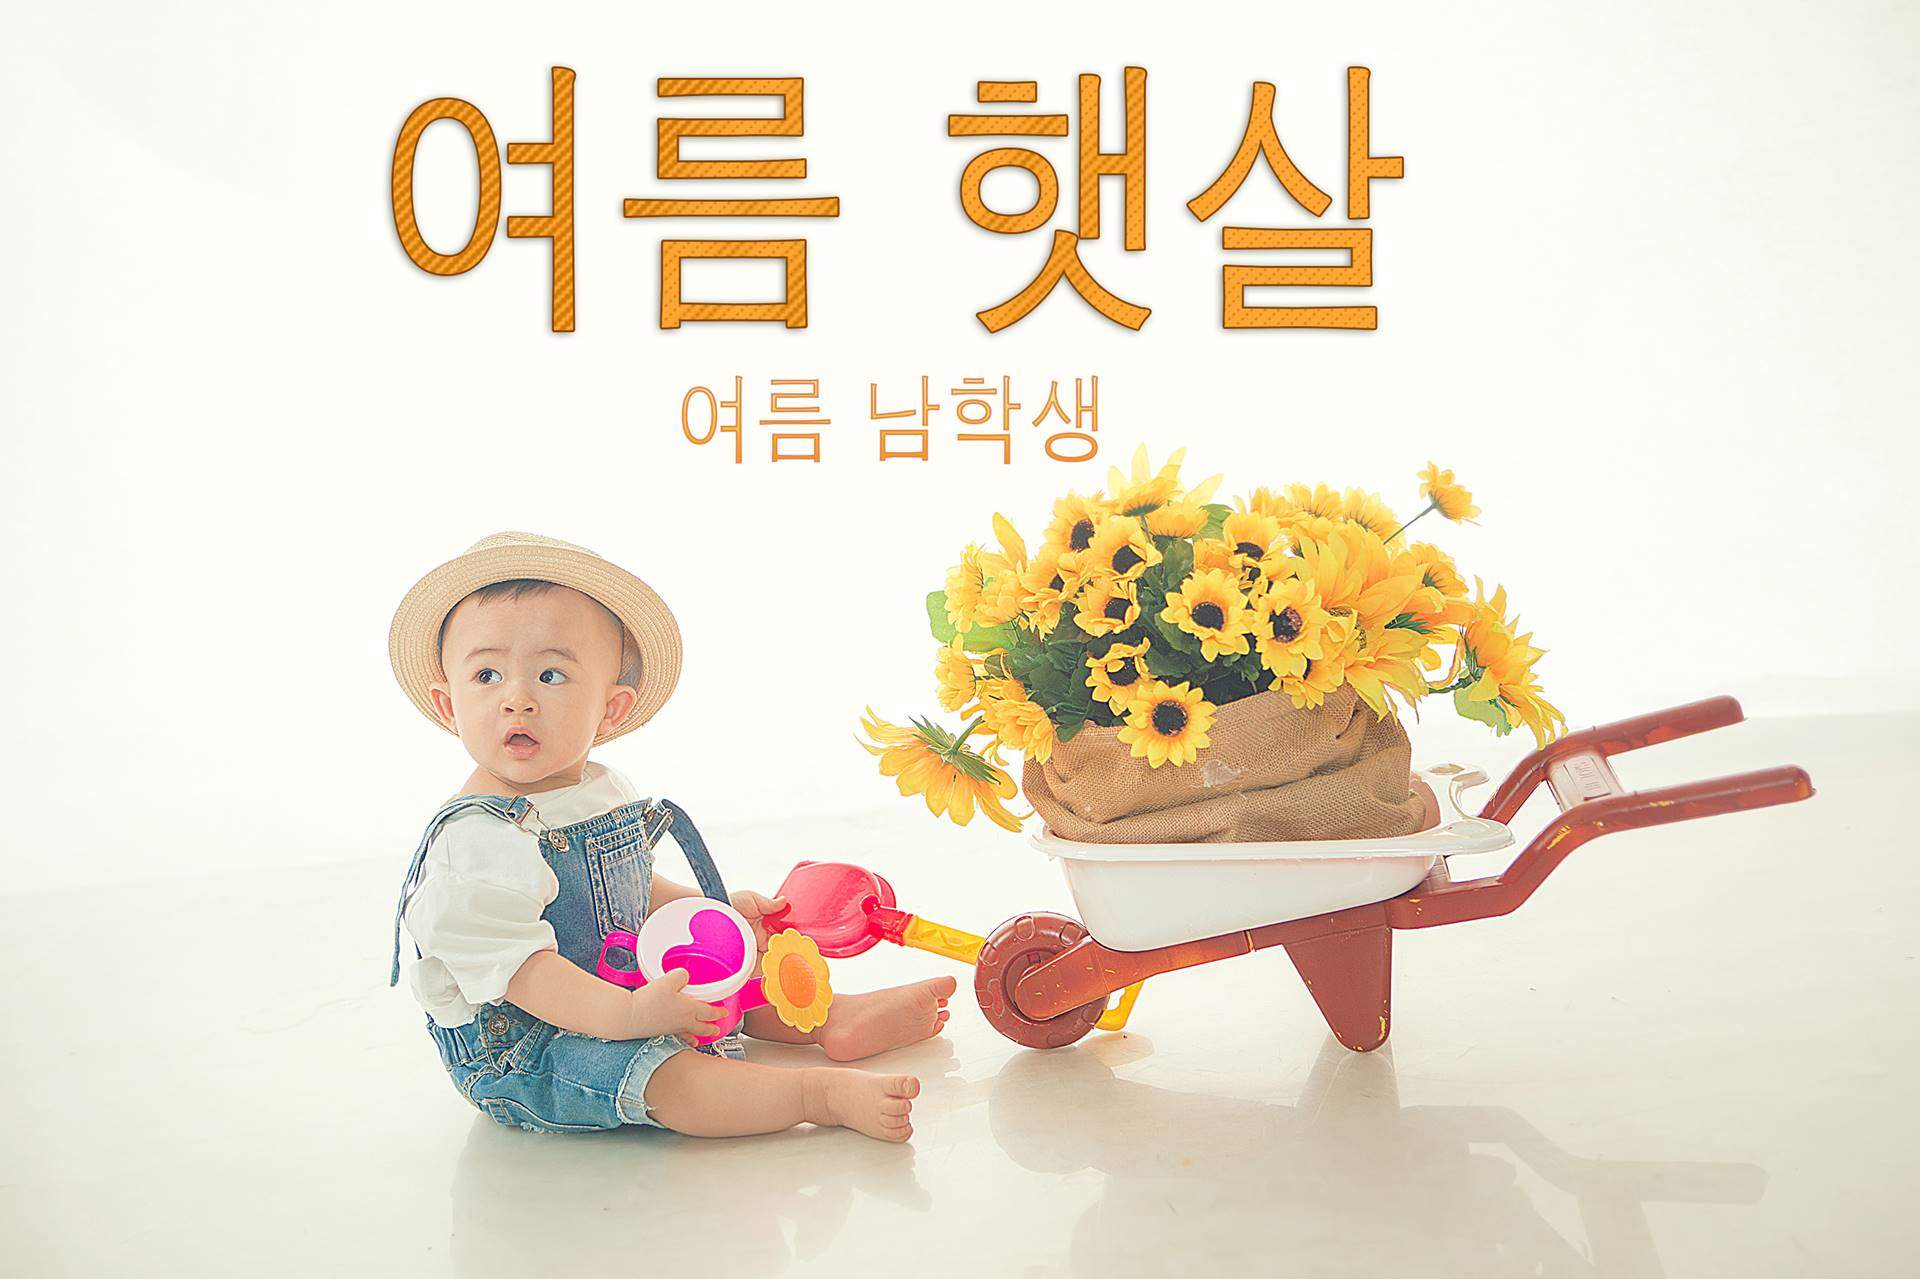 Chụp ảnh cho bé phong cách Hàn Quốc - Donald studio, Chụp hình cho bé phong cách Hàn Quốc, chup anh han quoc, chụp ảnh hàn quốc cho bé